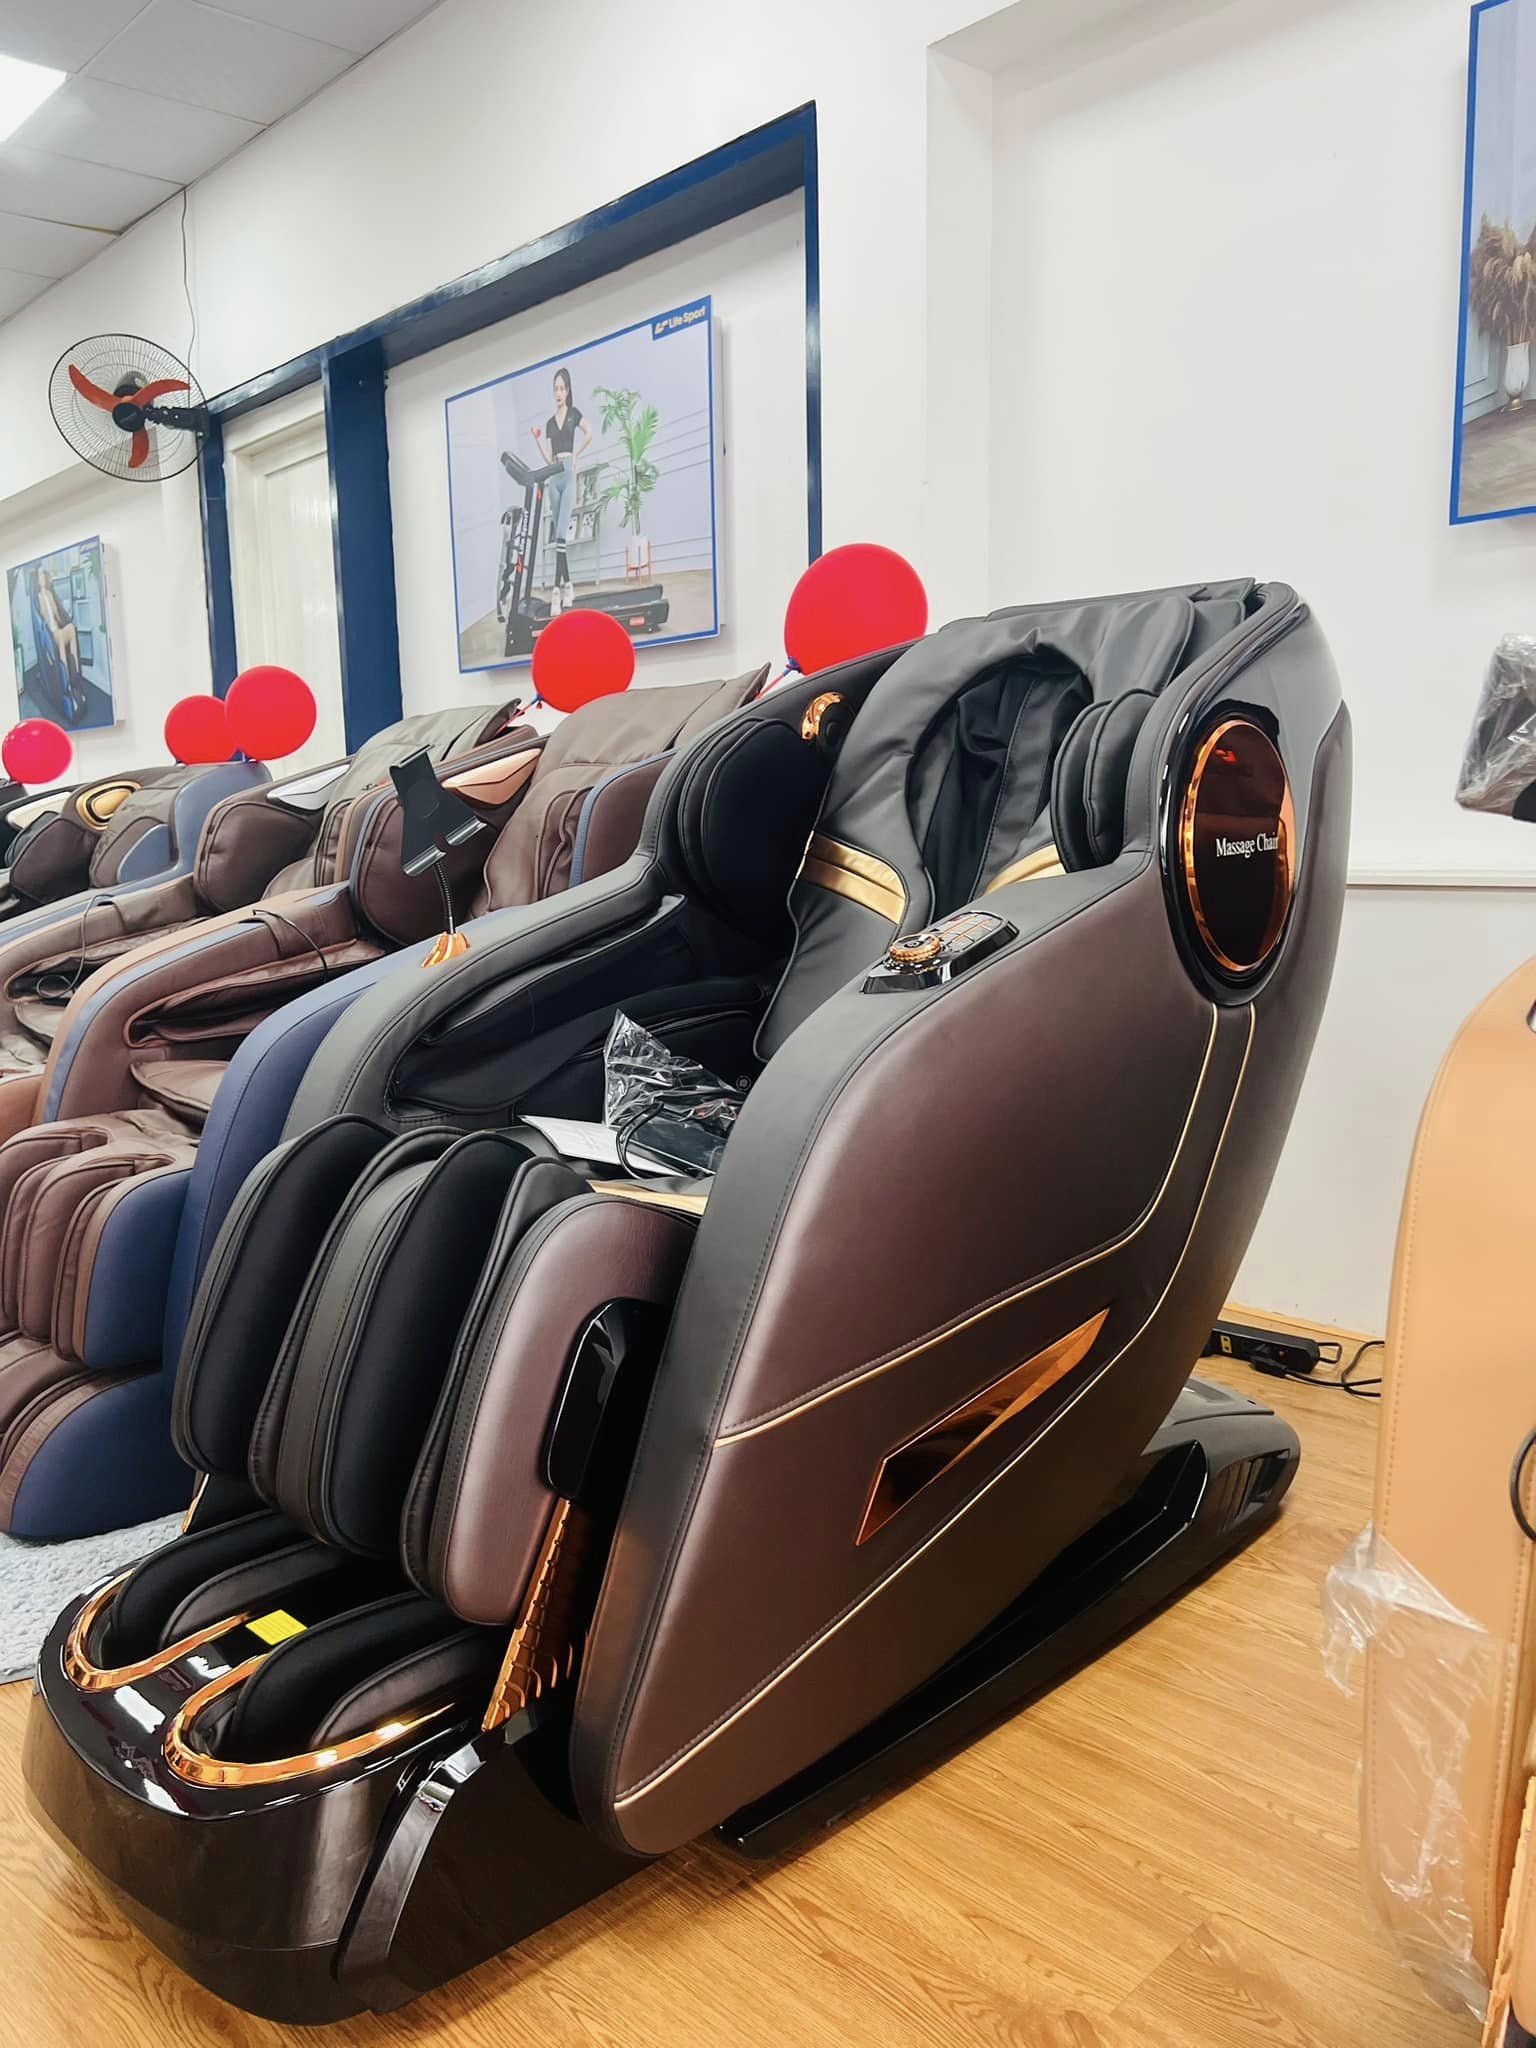 Mua ghế massage Lifesport LS-937-Nhận ngay máy chạy bộ 14.9 triệu đồng